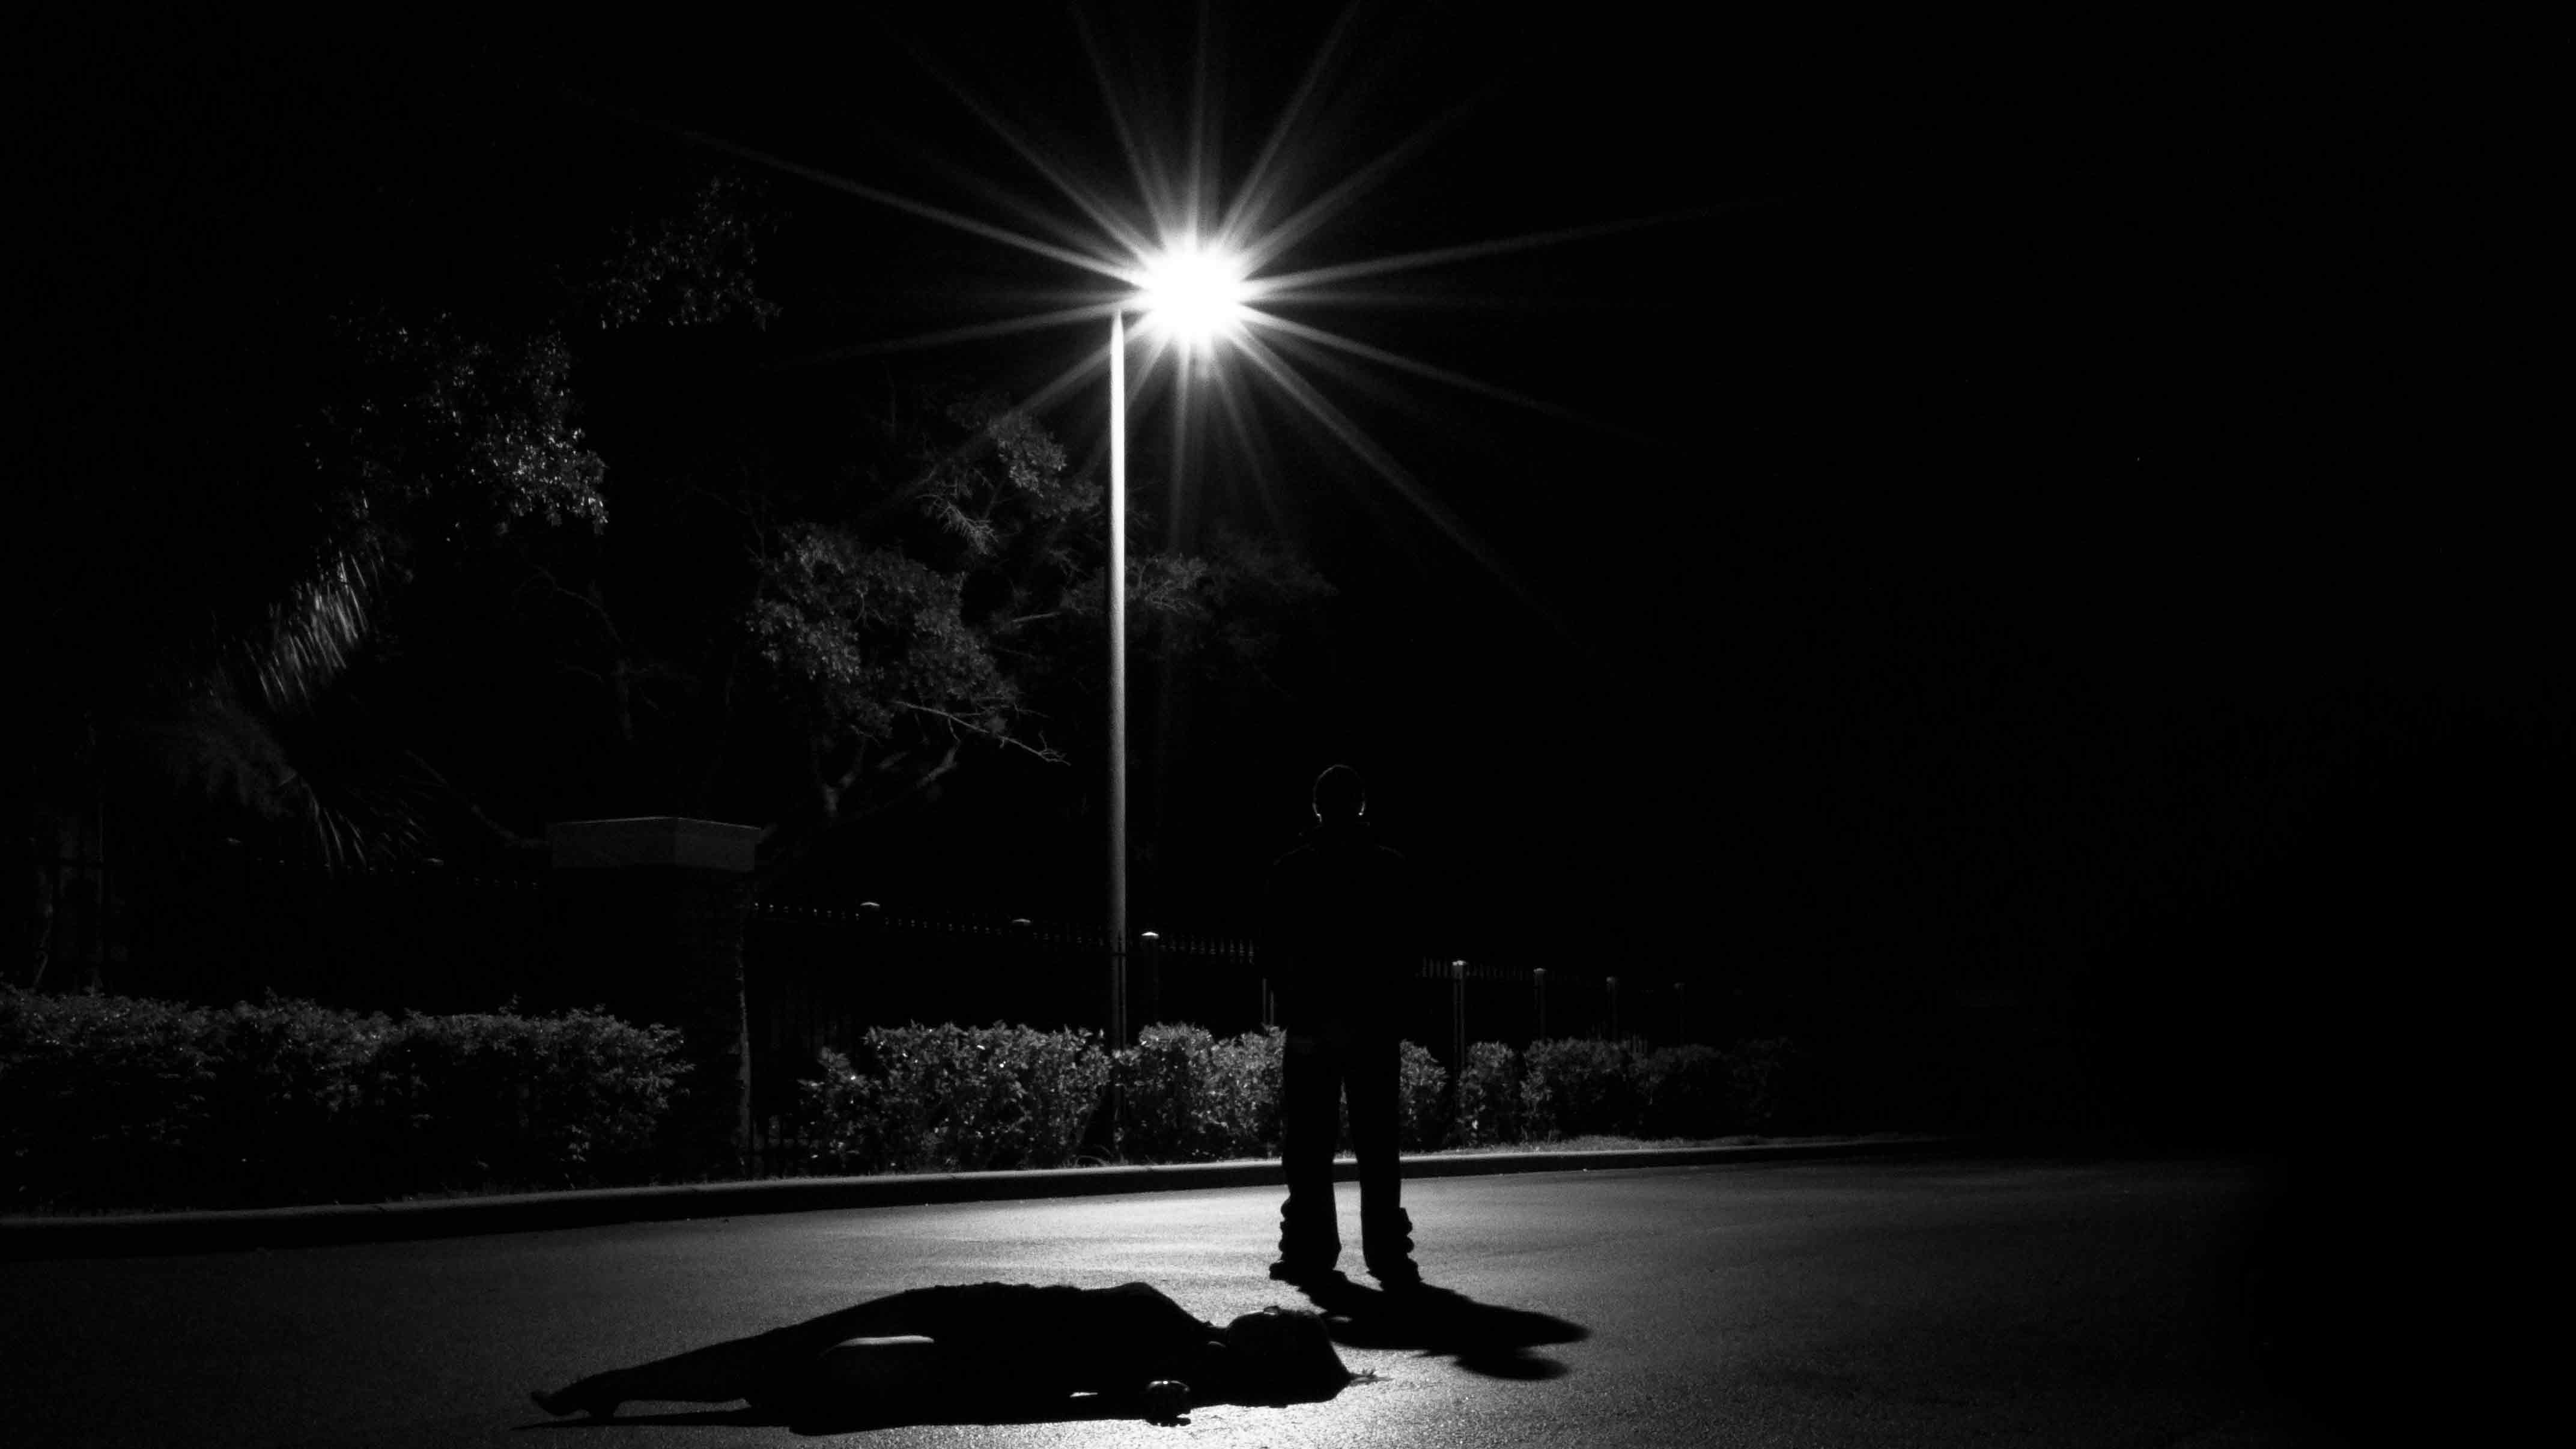 Dark figure standing beneath a street light over an unconscious figure